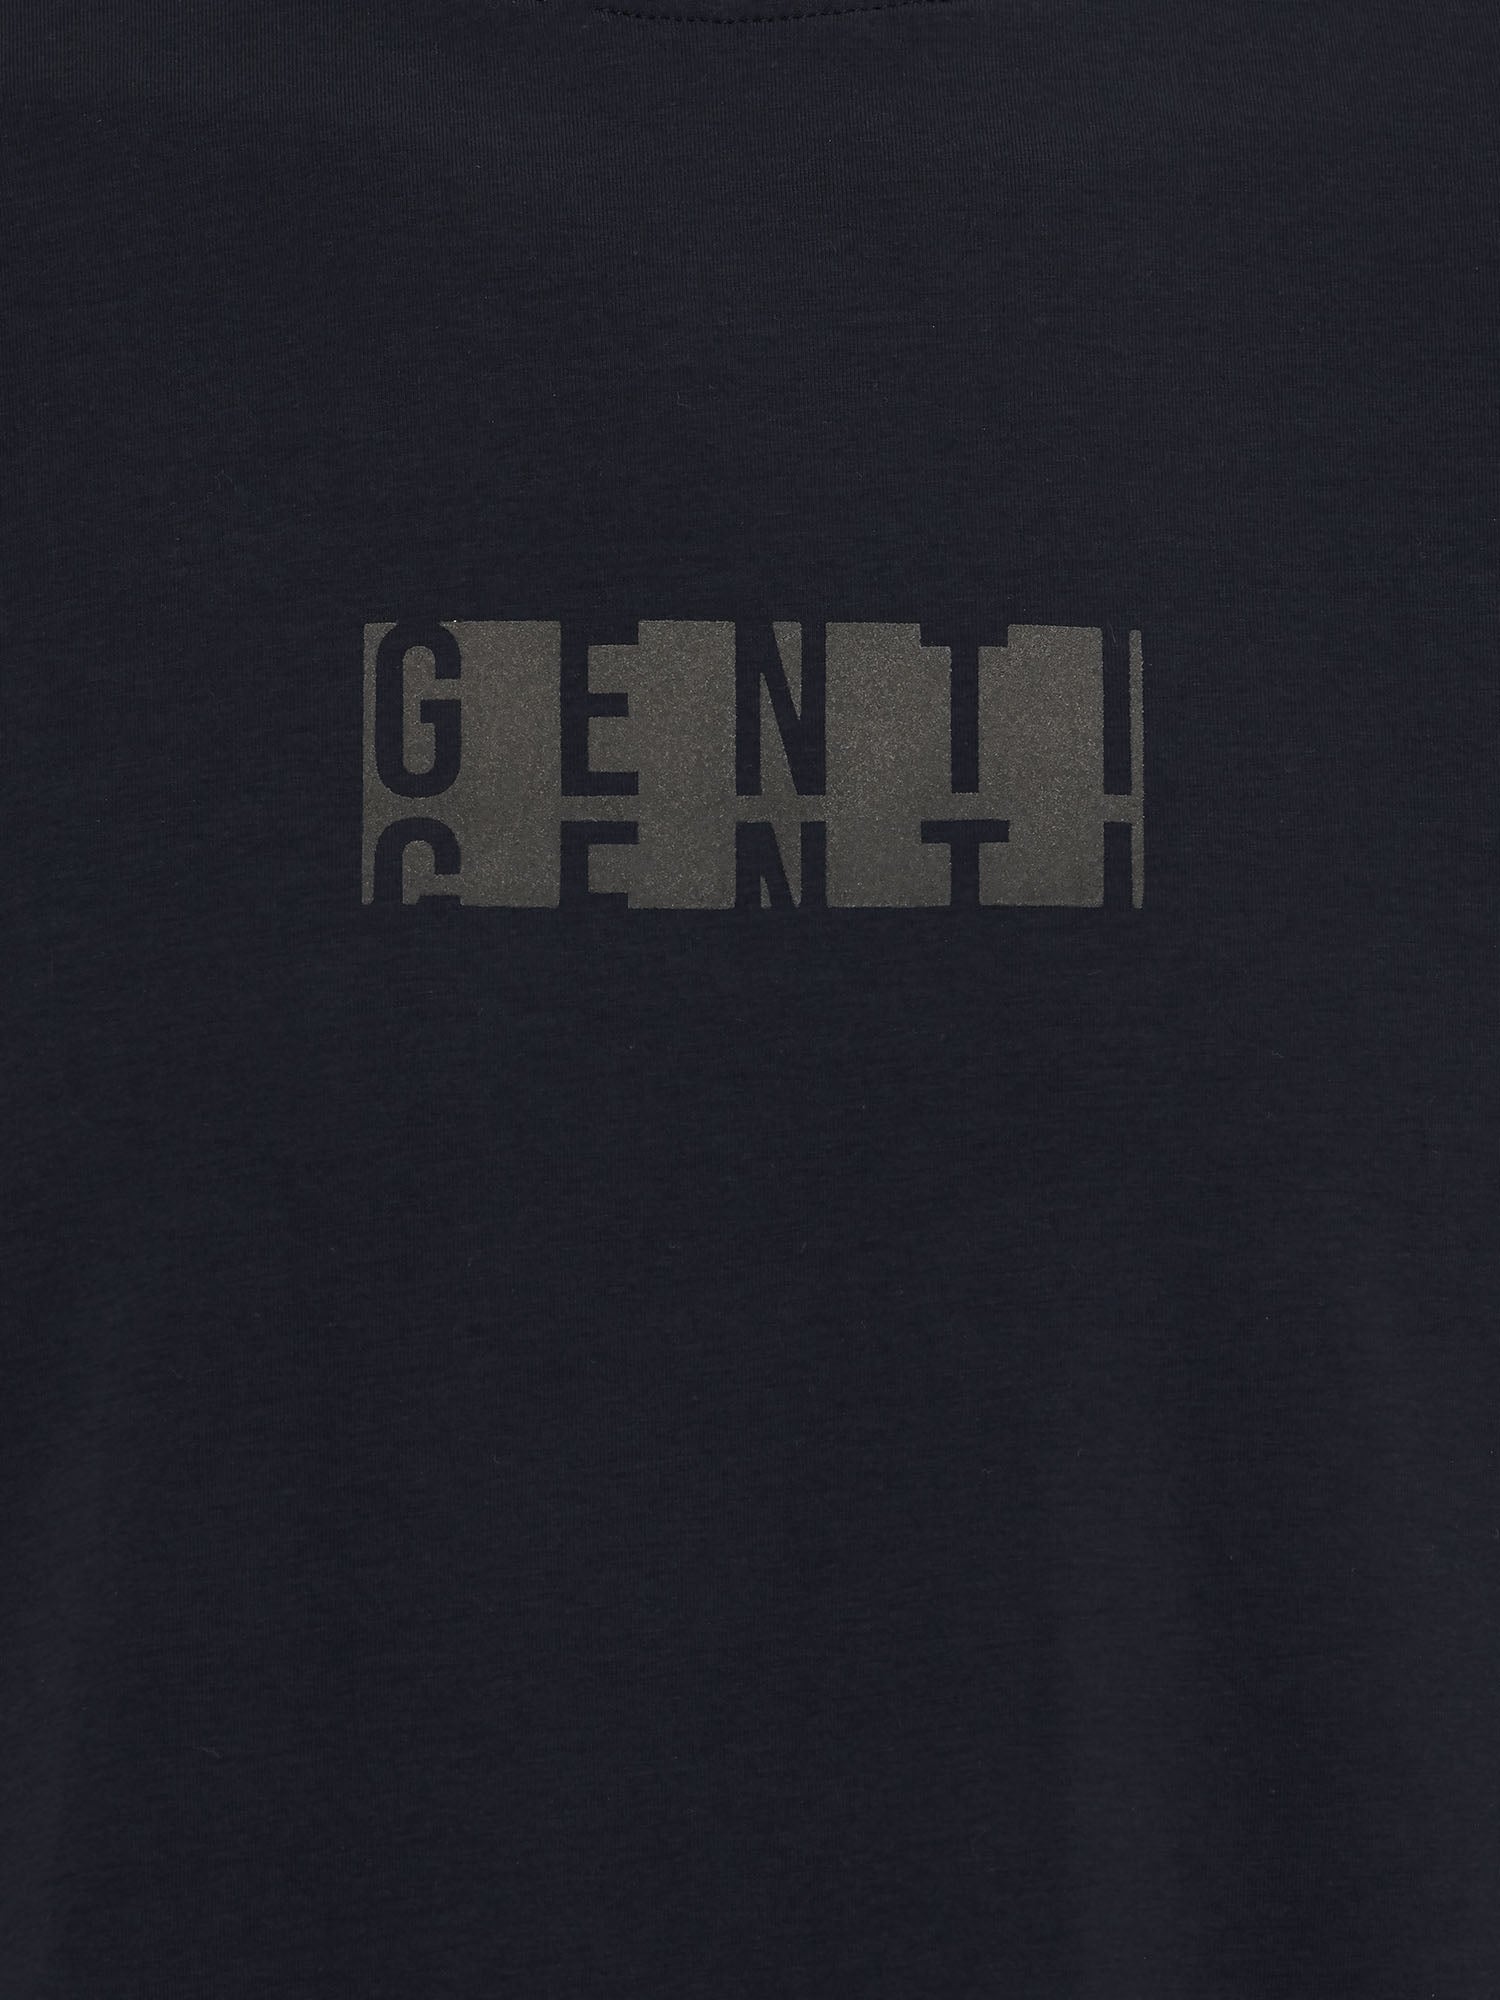 Genti T-shirt - Raf blauw